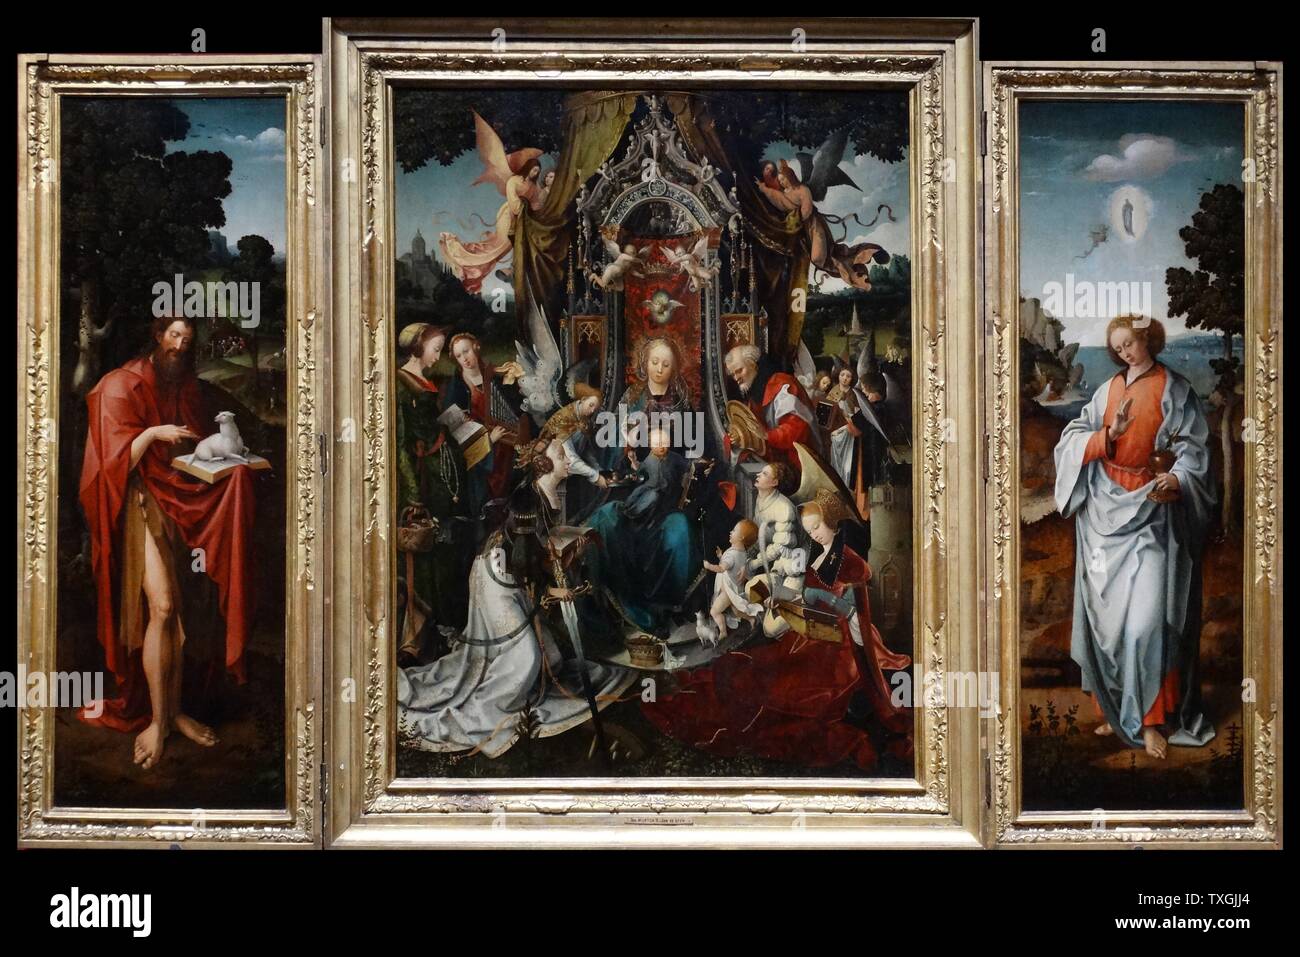 Gemälde mit dem Titel "Die Jungfrau und Kind inthronisiert mit Heiligen" von Jan de Beer (1470-1528) ein niederländischer Maler und Zeichner. Datiert aus dem 16. Jahrhundert Stockfoto